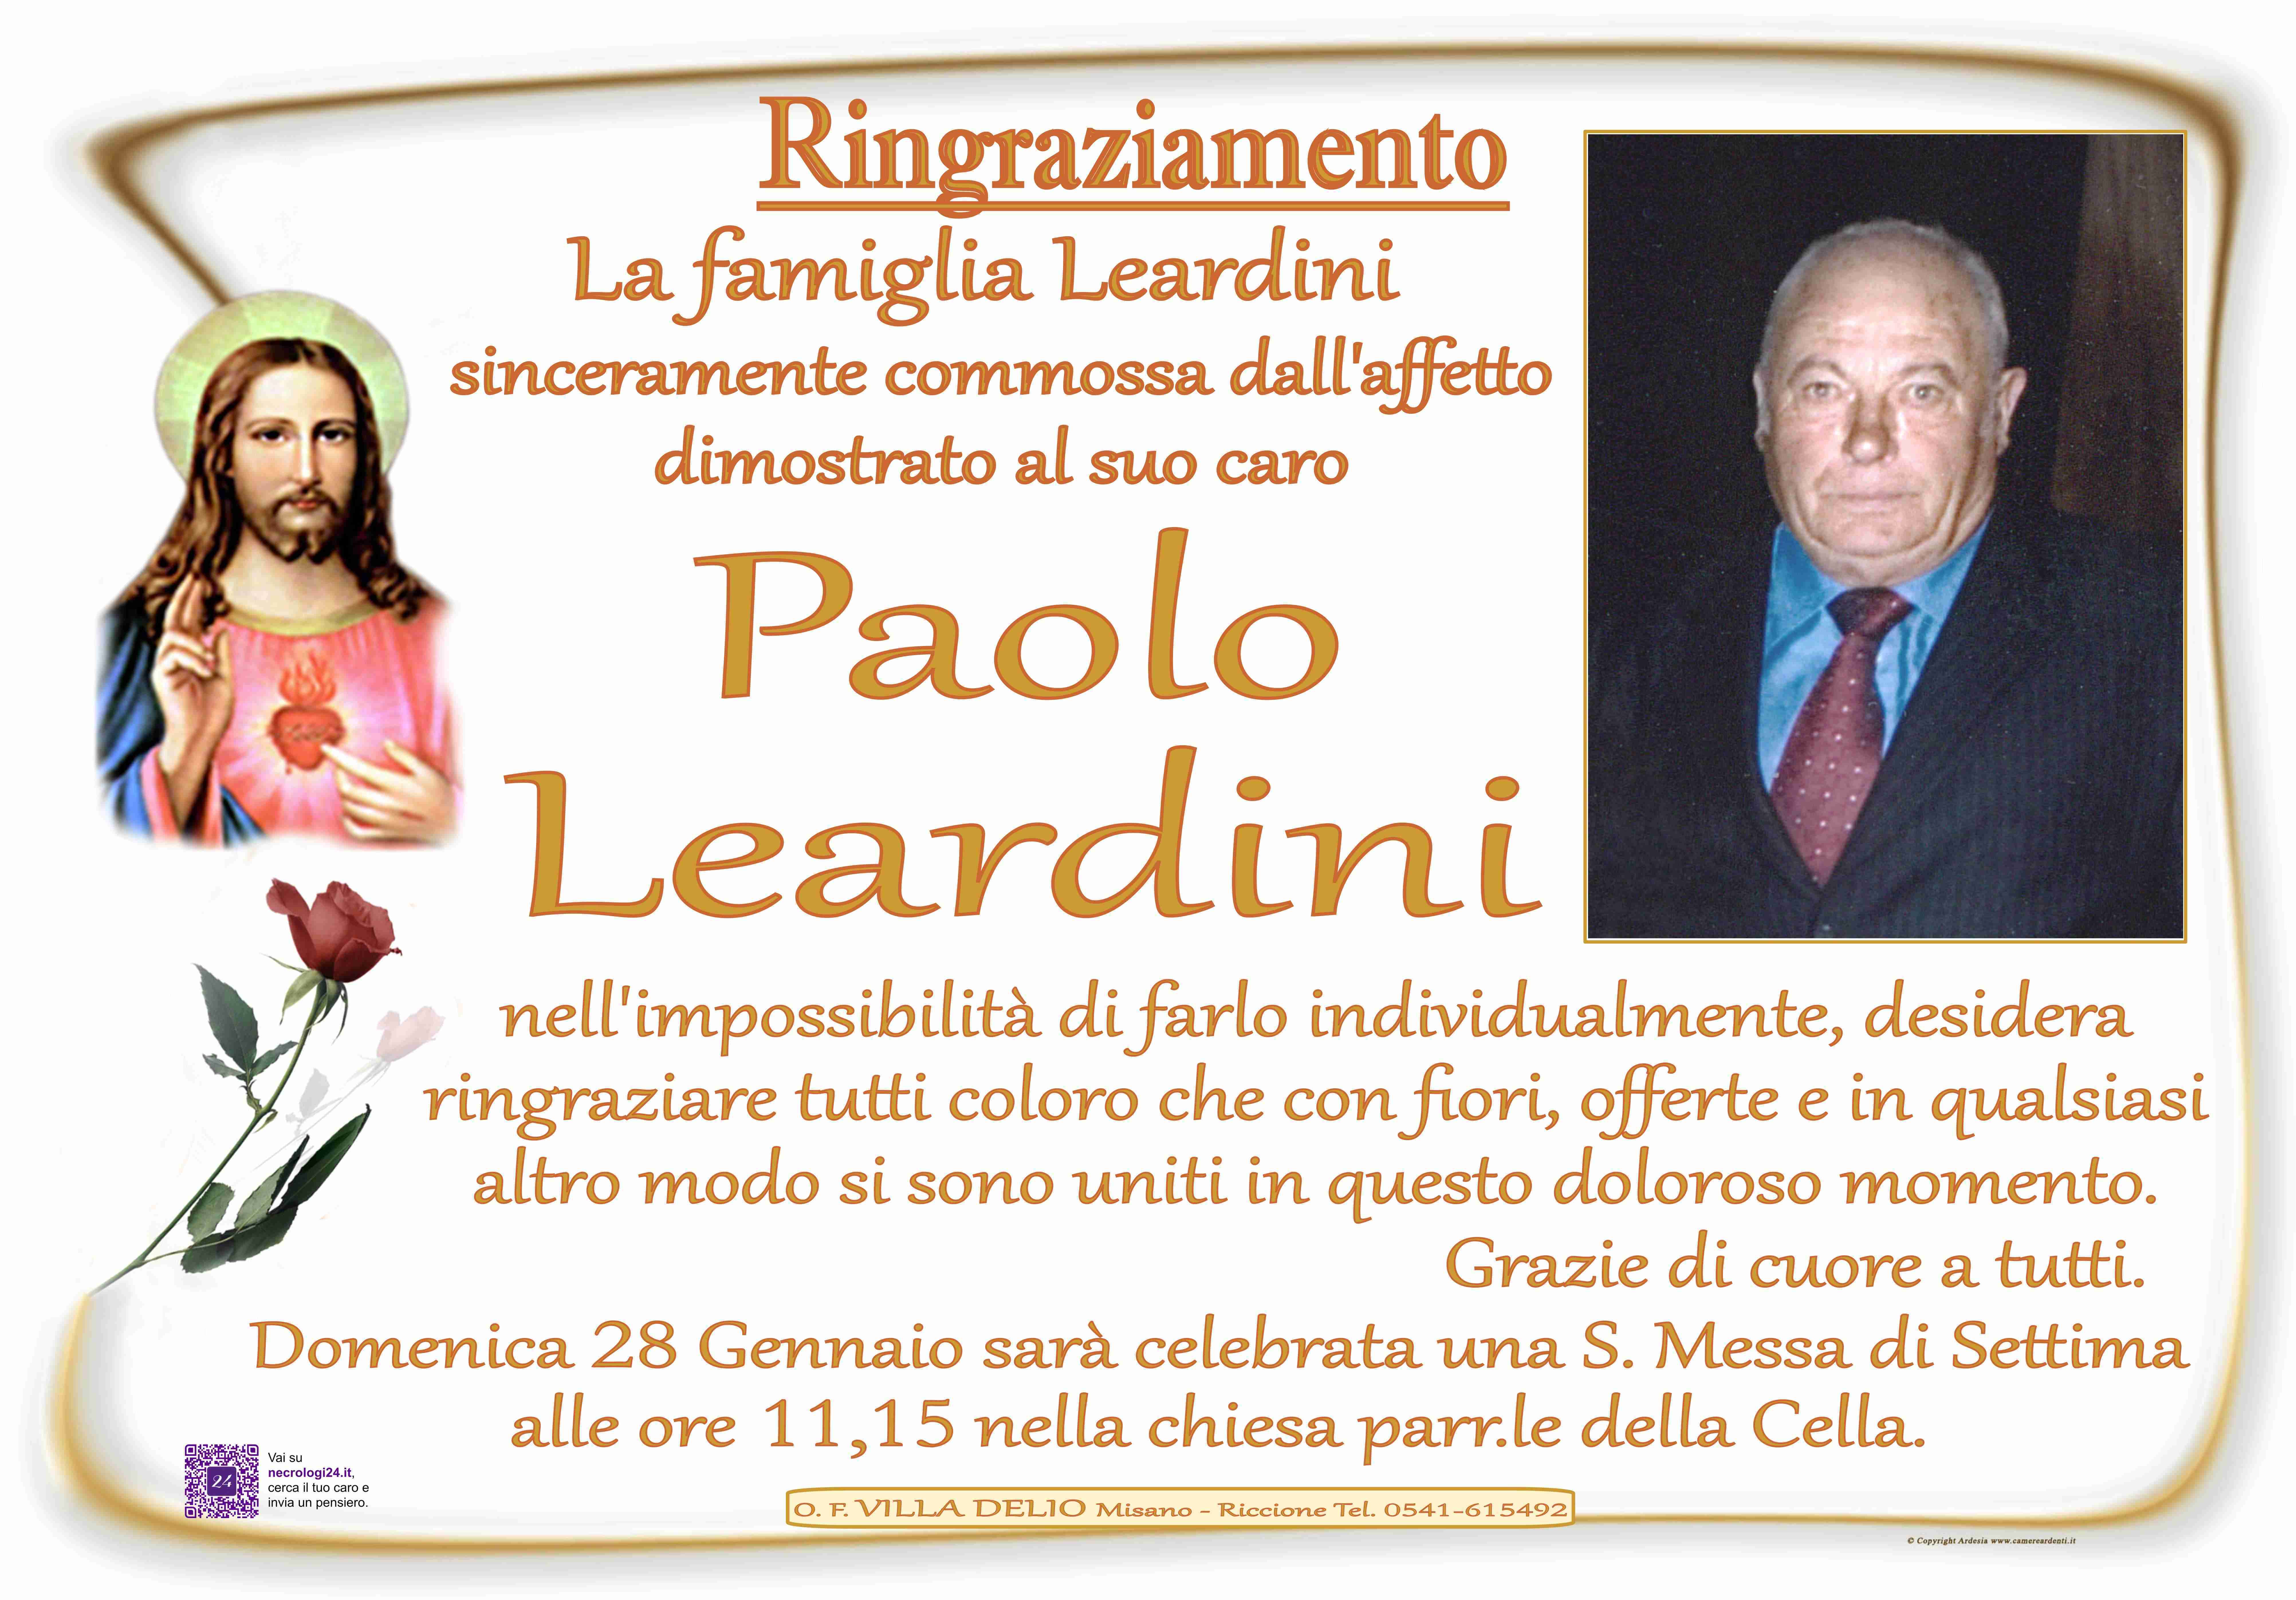 Paolo Leardini